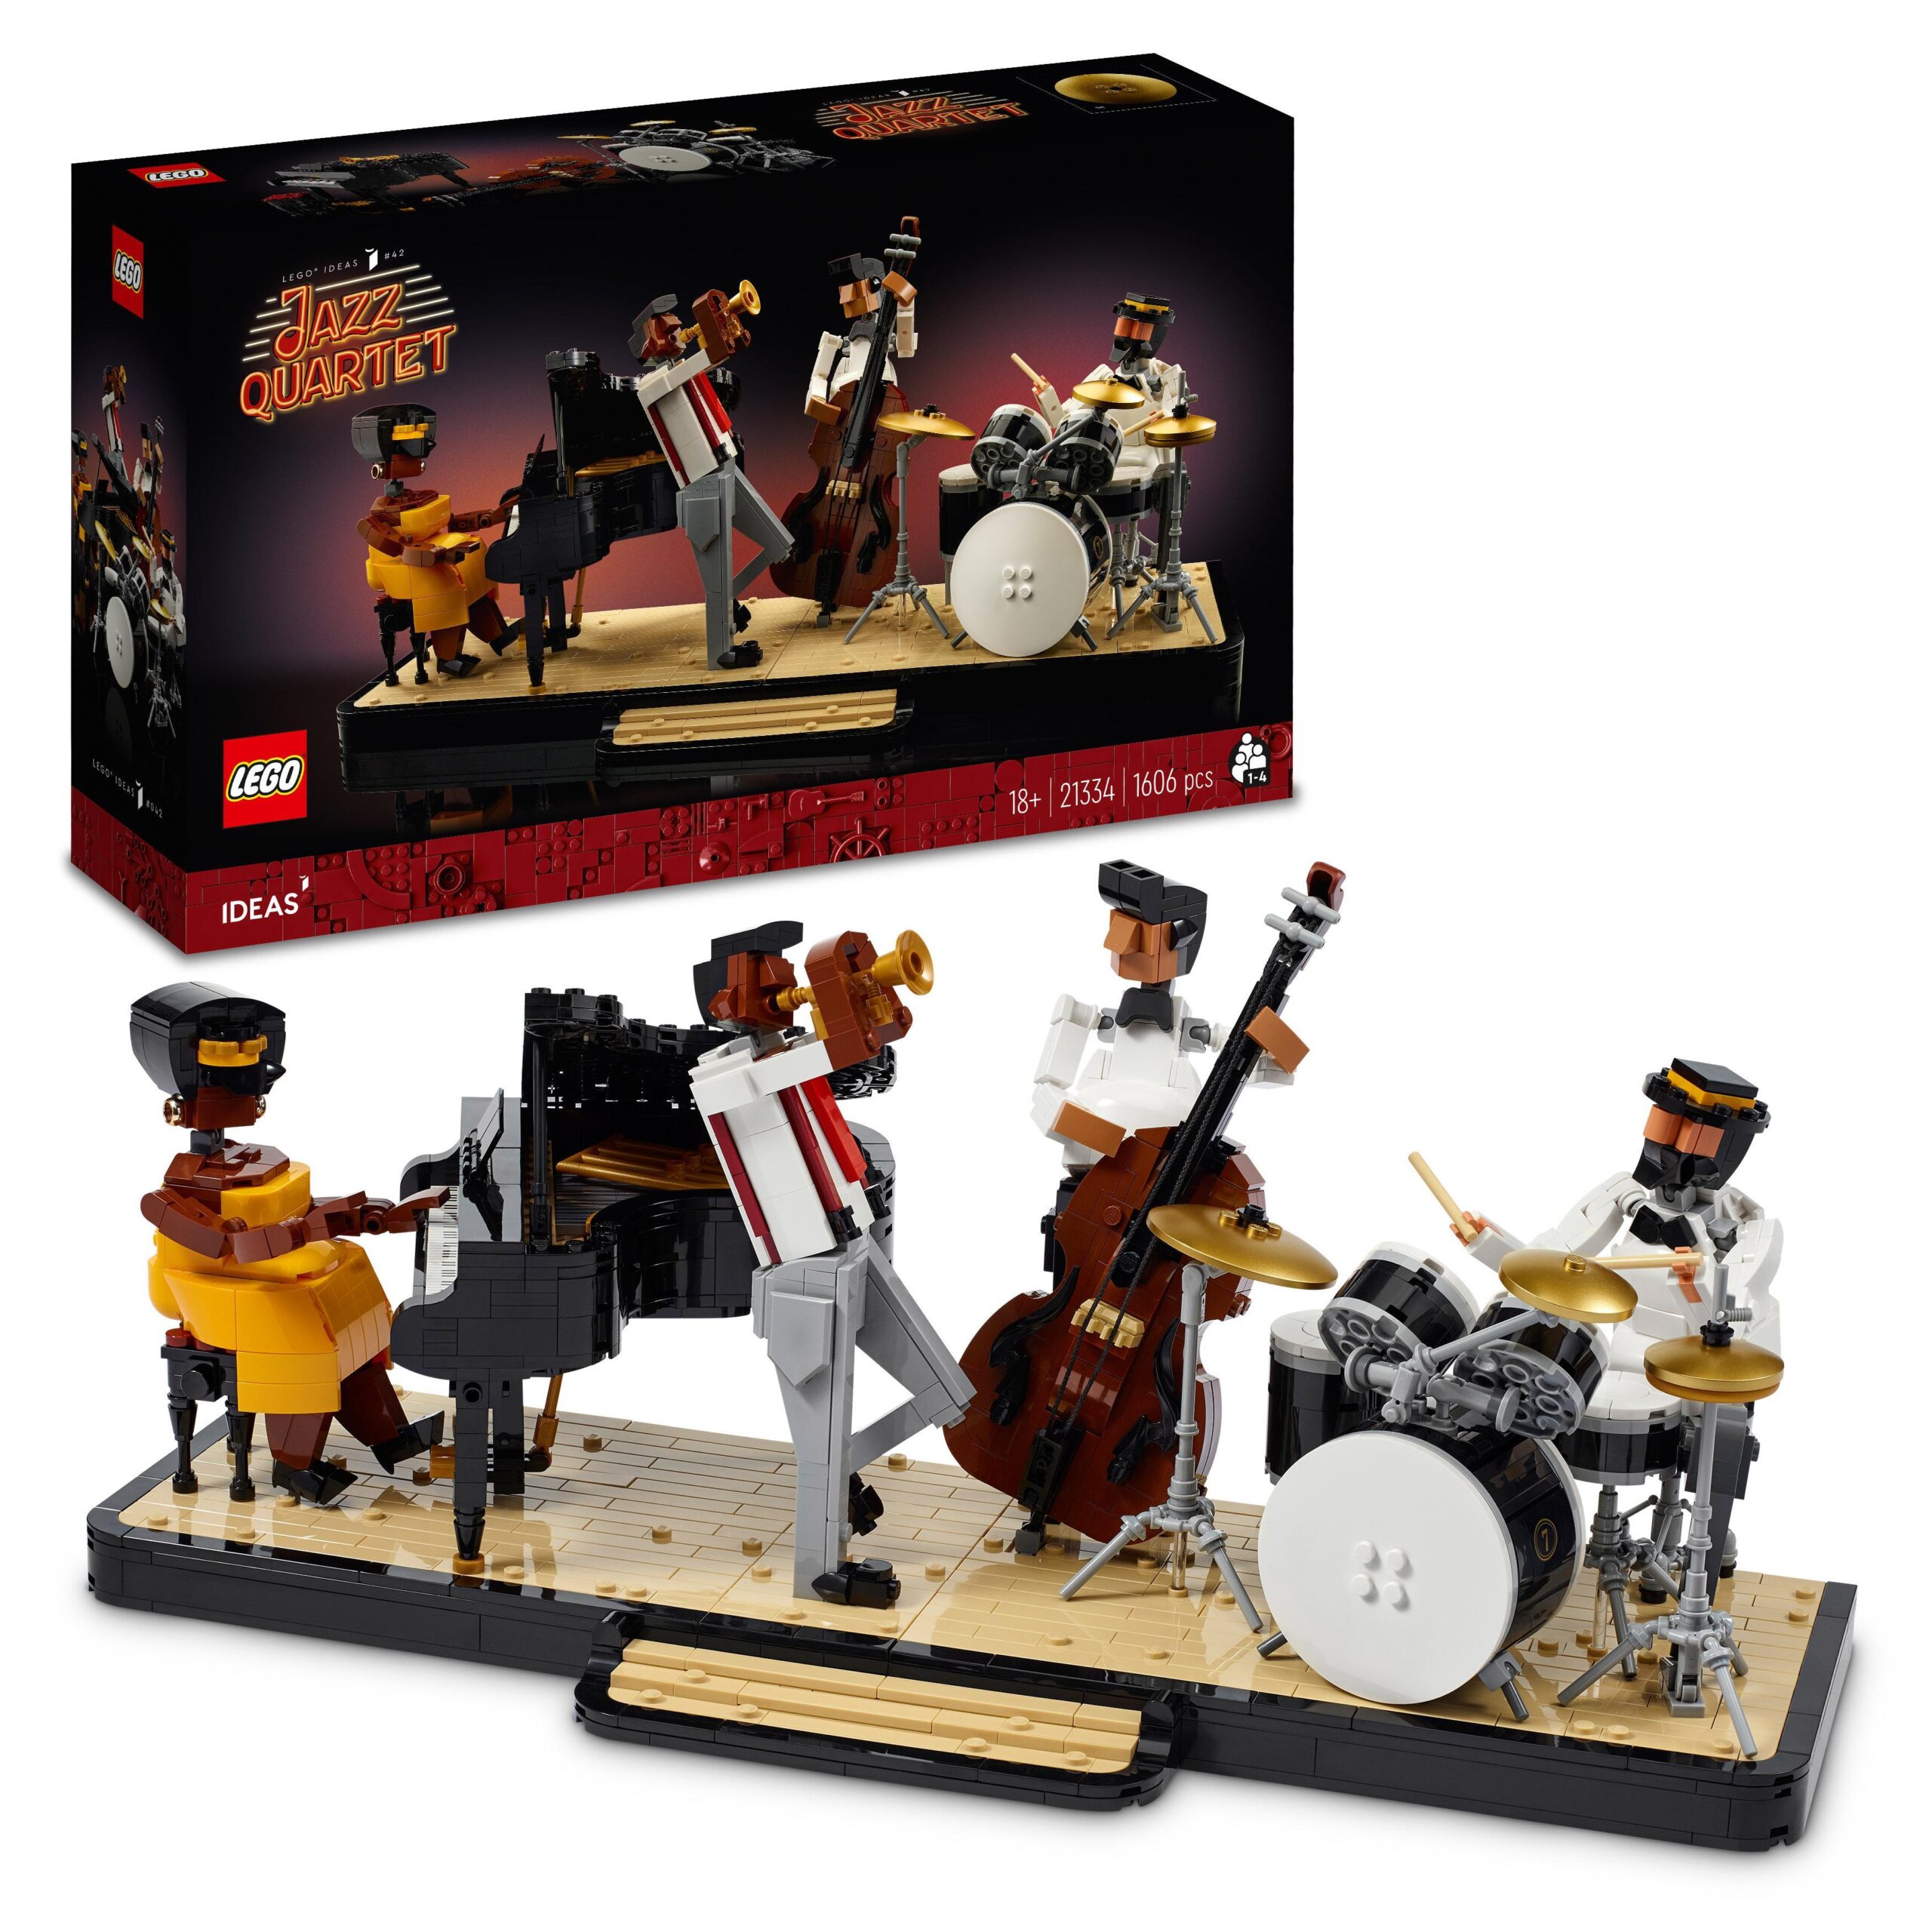 Lego ideas 21334 quartetto jazz, idee regalo per adulti amanti della musica  con musicisti e strumenti: pianoforte e batteria - Toys Center